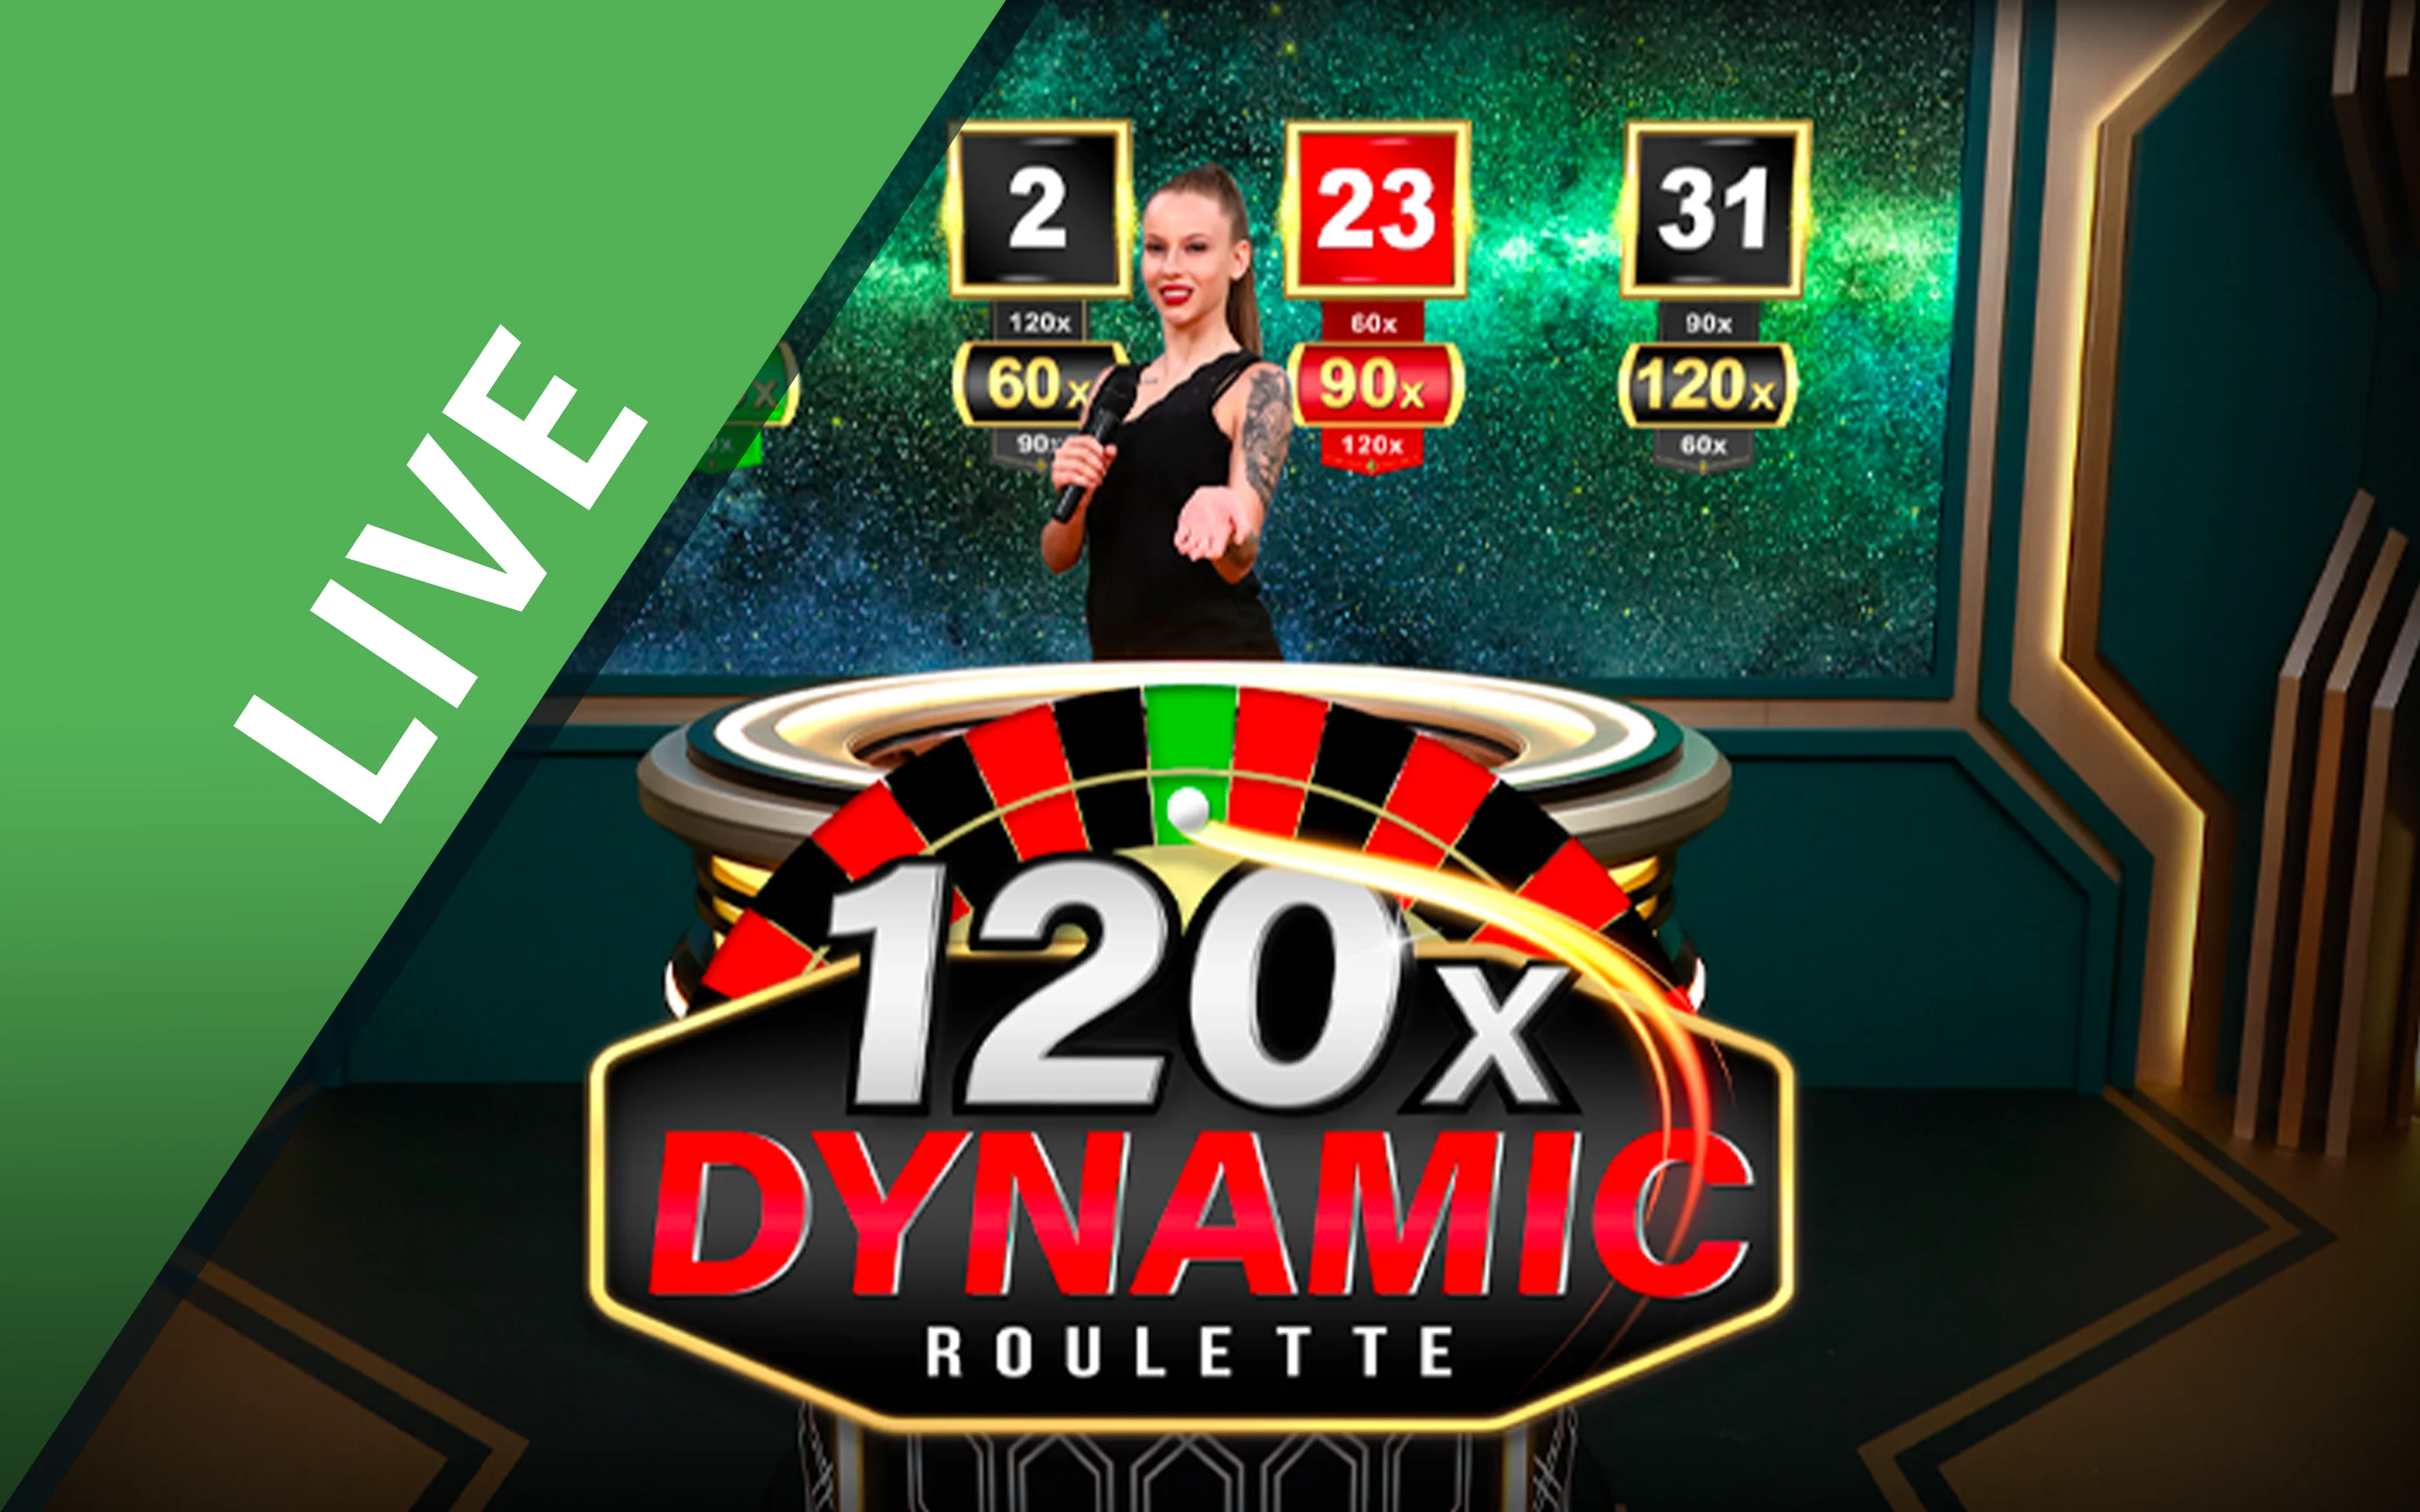 Speel Dynamic Roulette 120x op Starcasino.be online casino